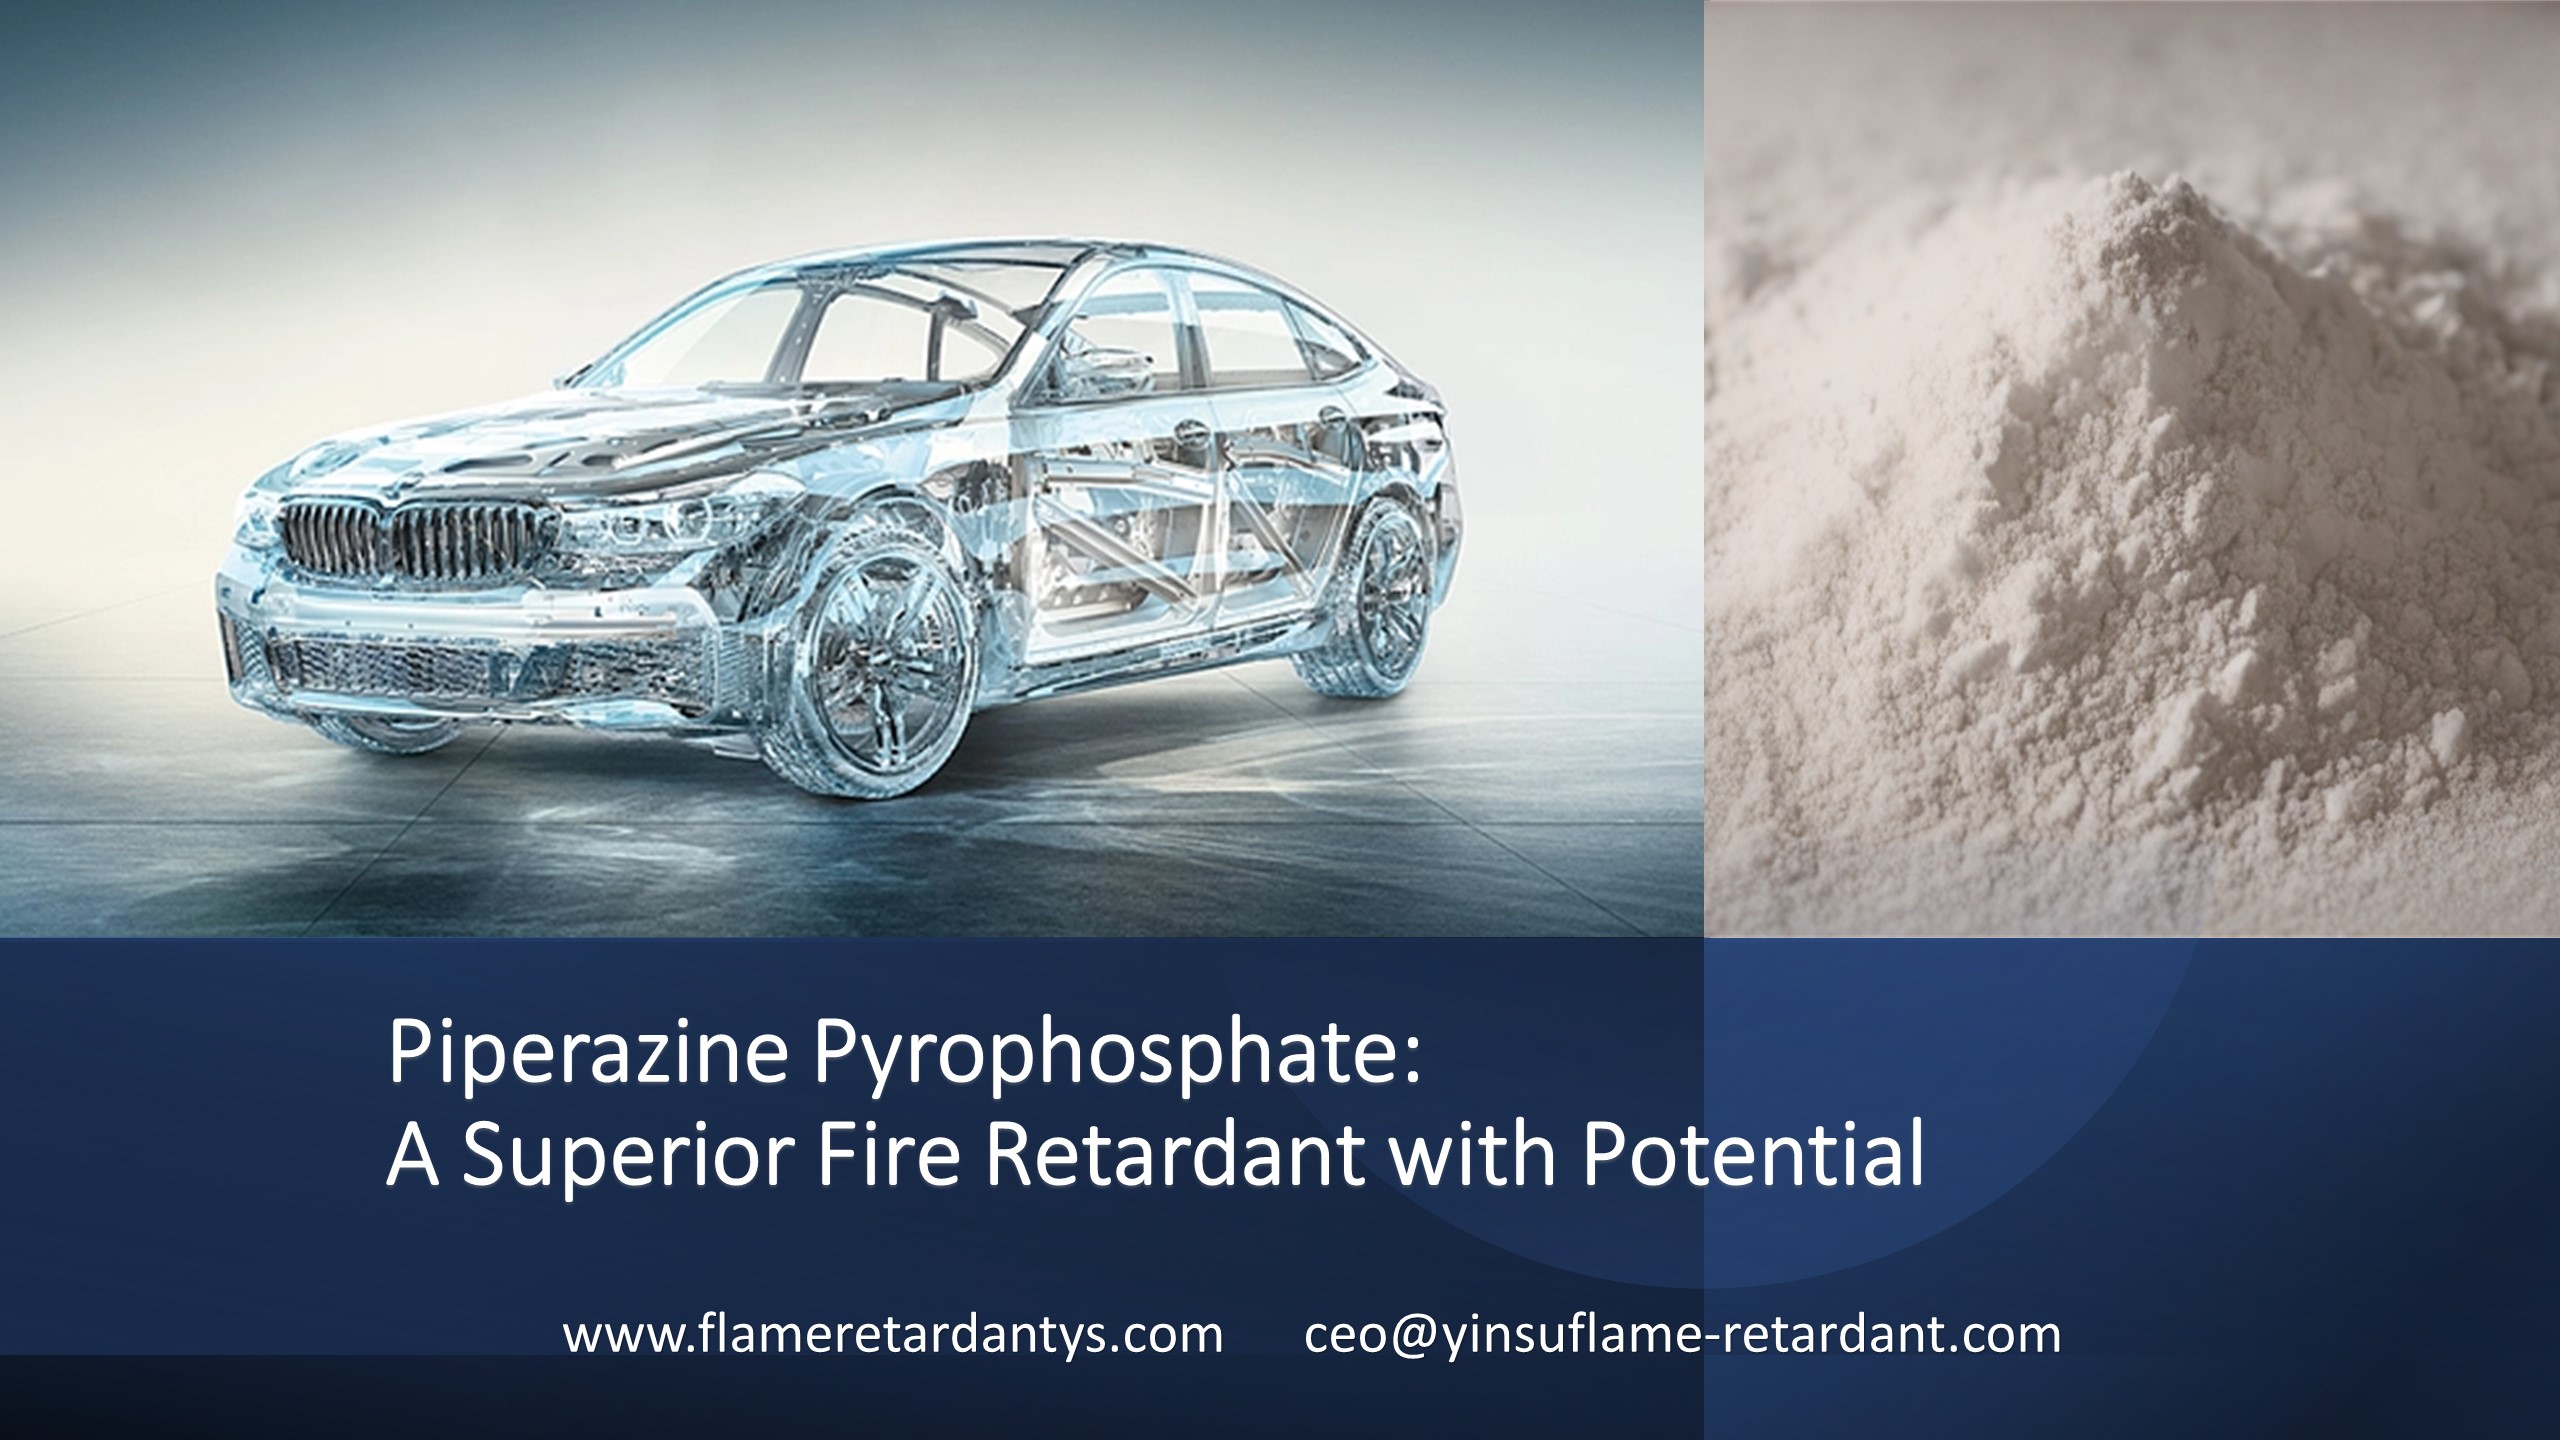 Pirofosfato de piperazina: un retardante de fuego superior con potencial